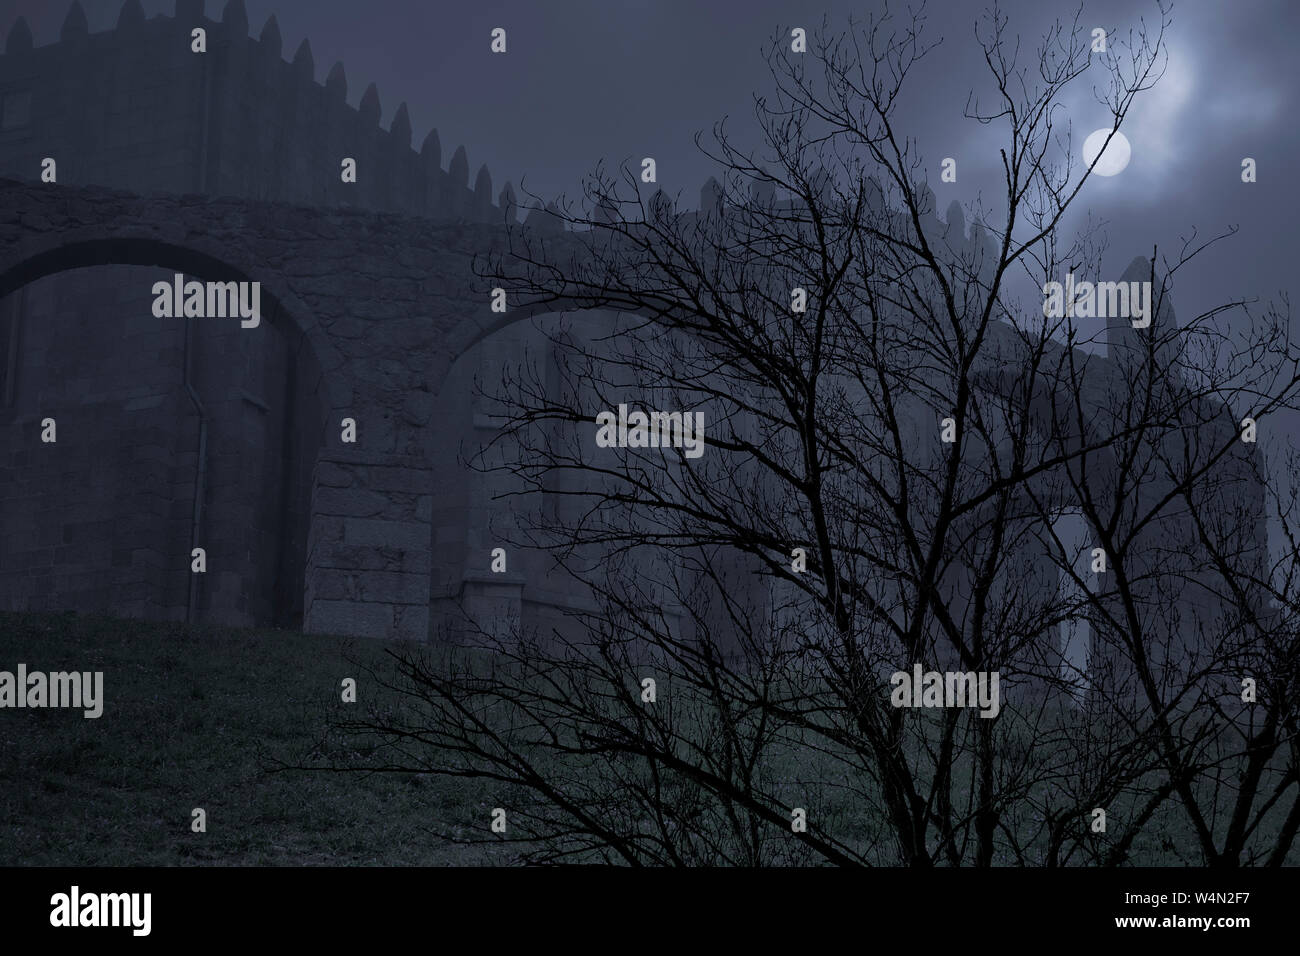 Ancien monastère médiéval dans un ciel couvert et brumeuse nuit de pleine lune Banque D'Images